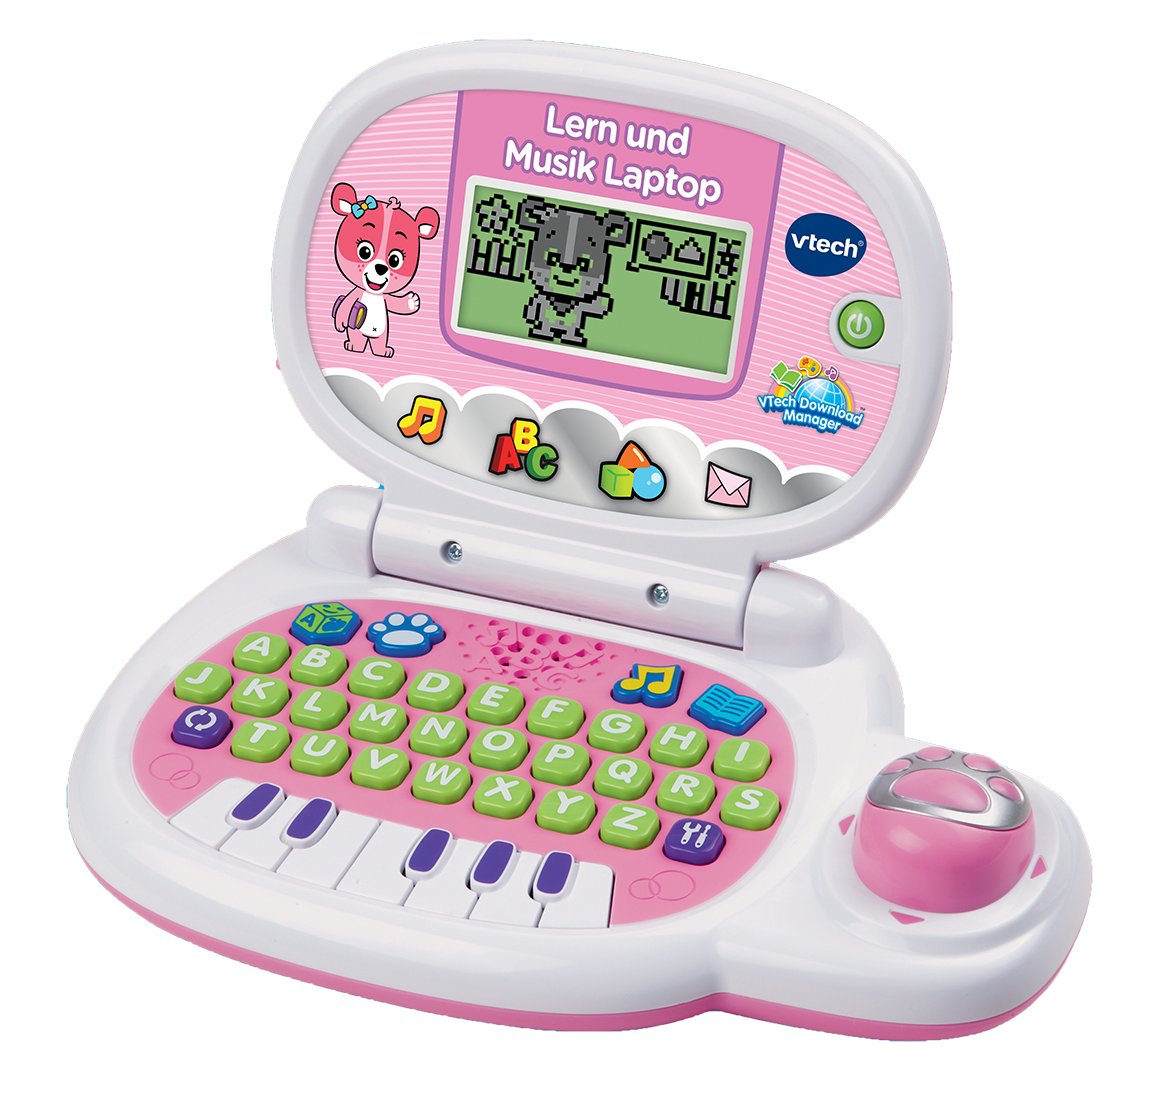 Vtech 80-139554 Lern und Musik Laptop, pink